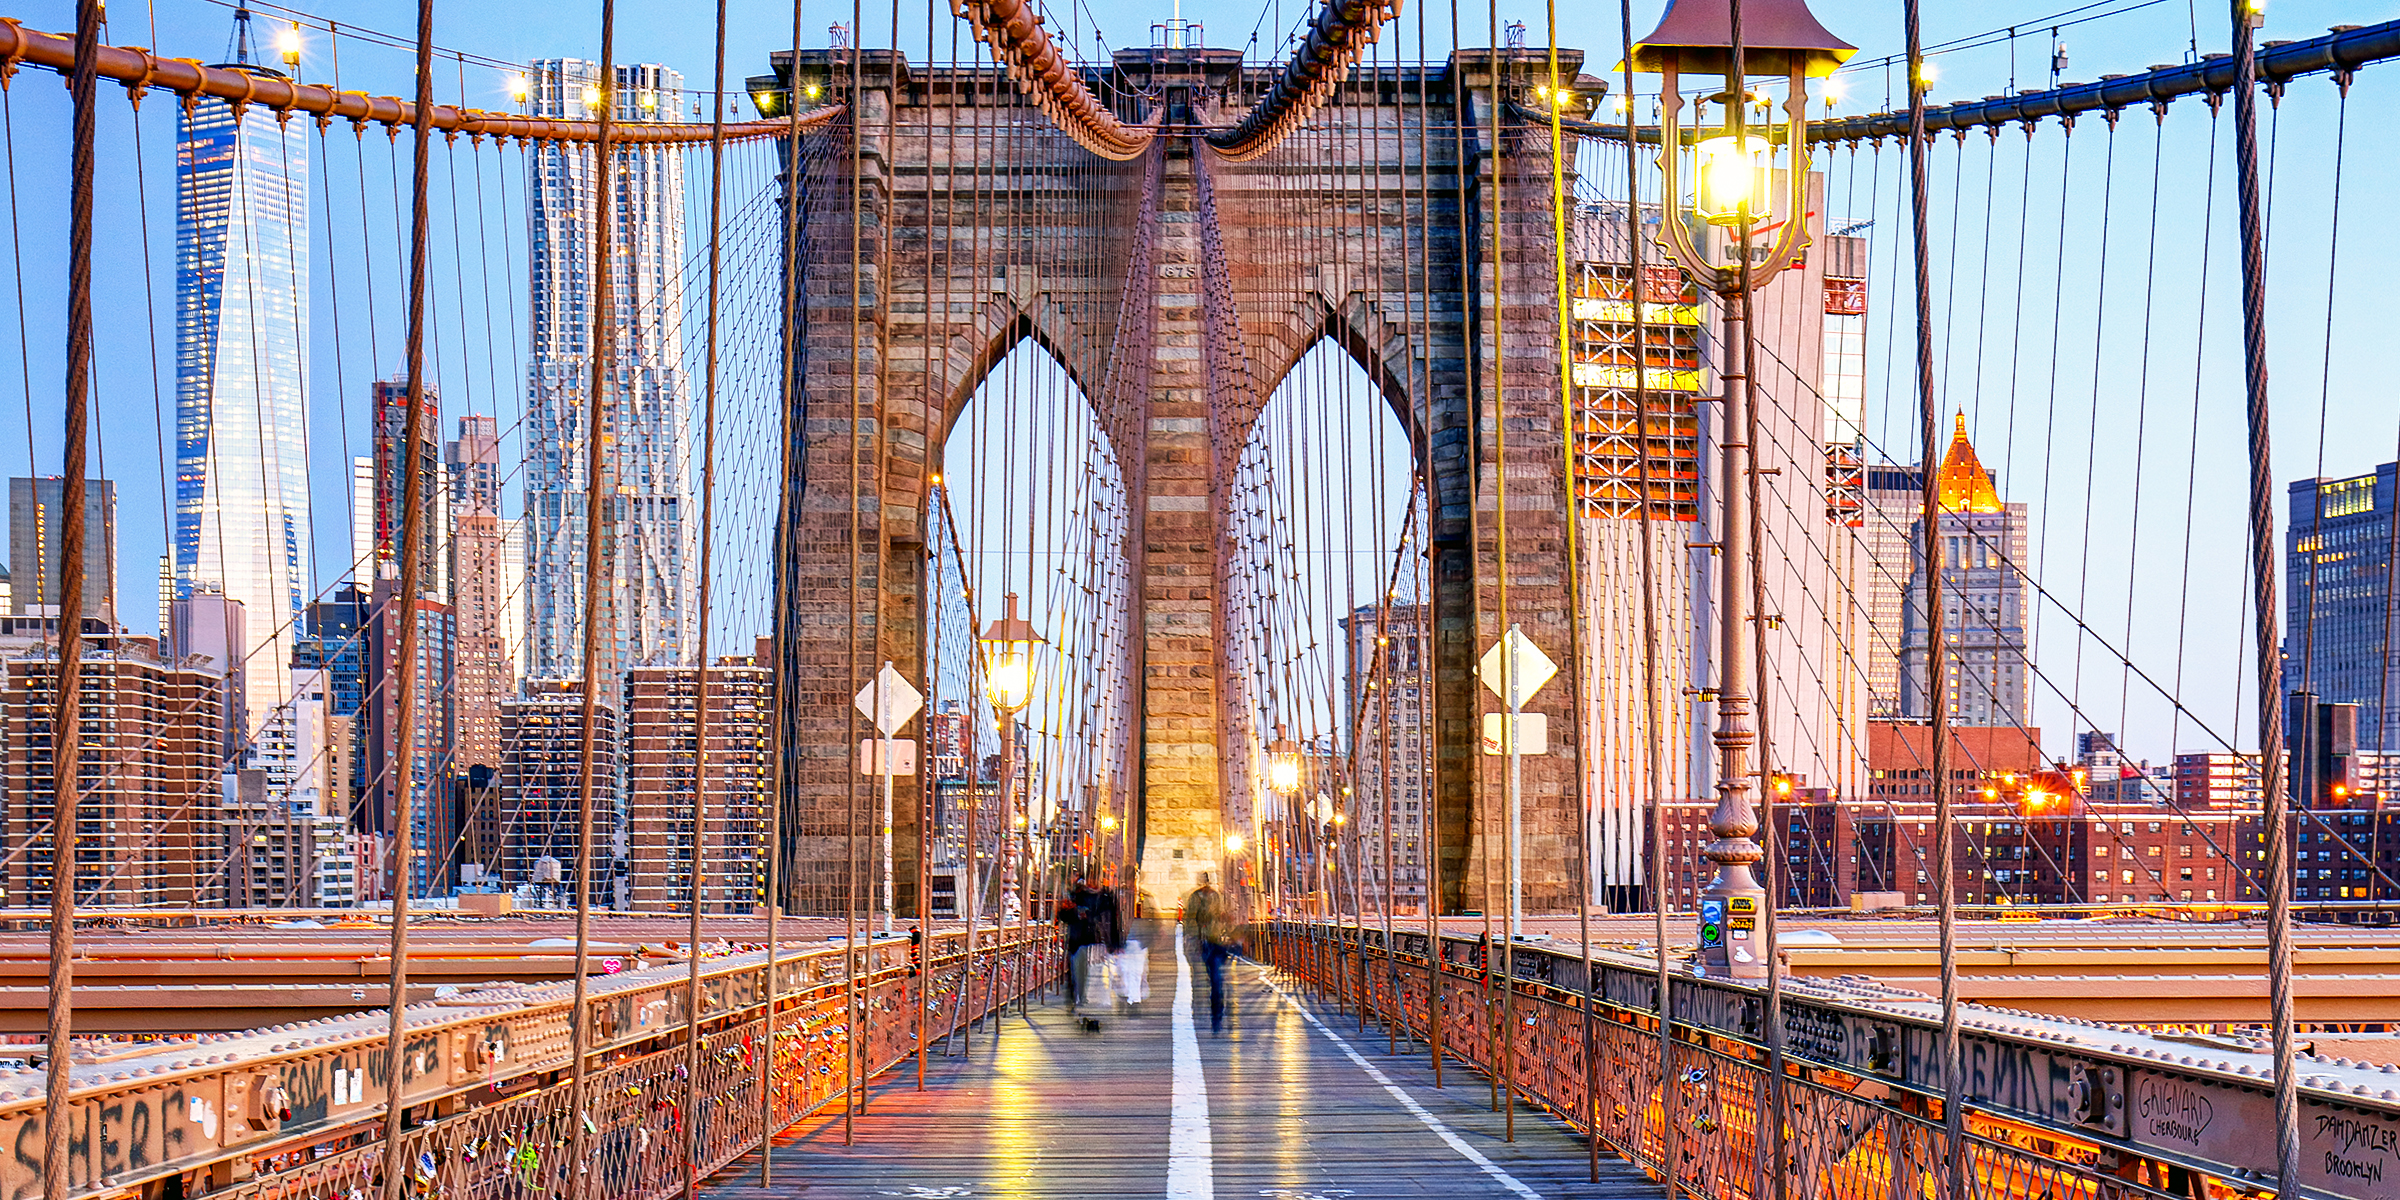 Brooklyn Bridge | Source: Shutterstock